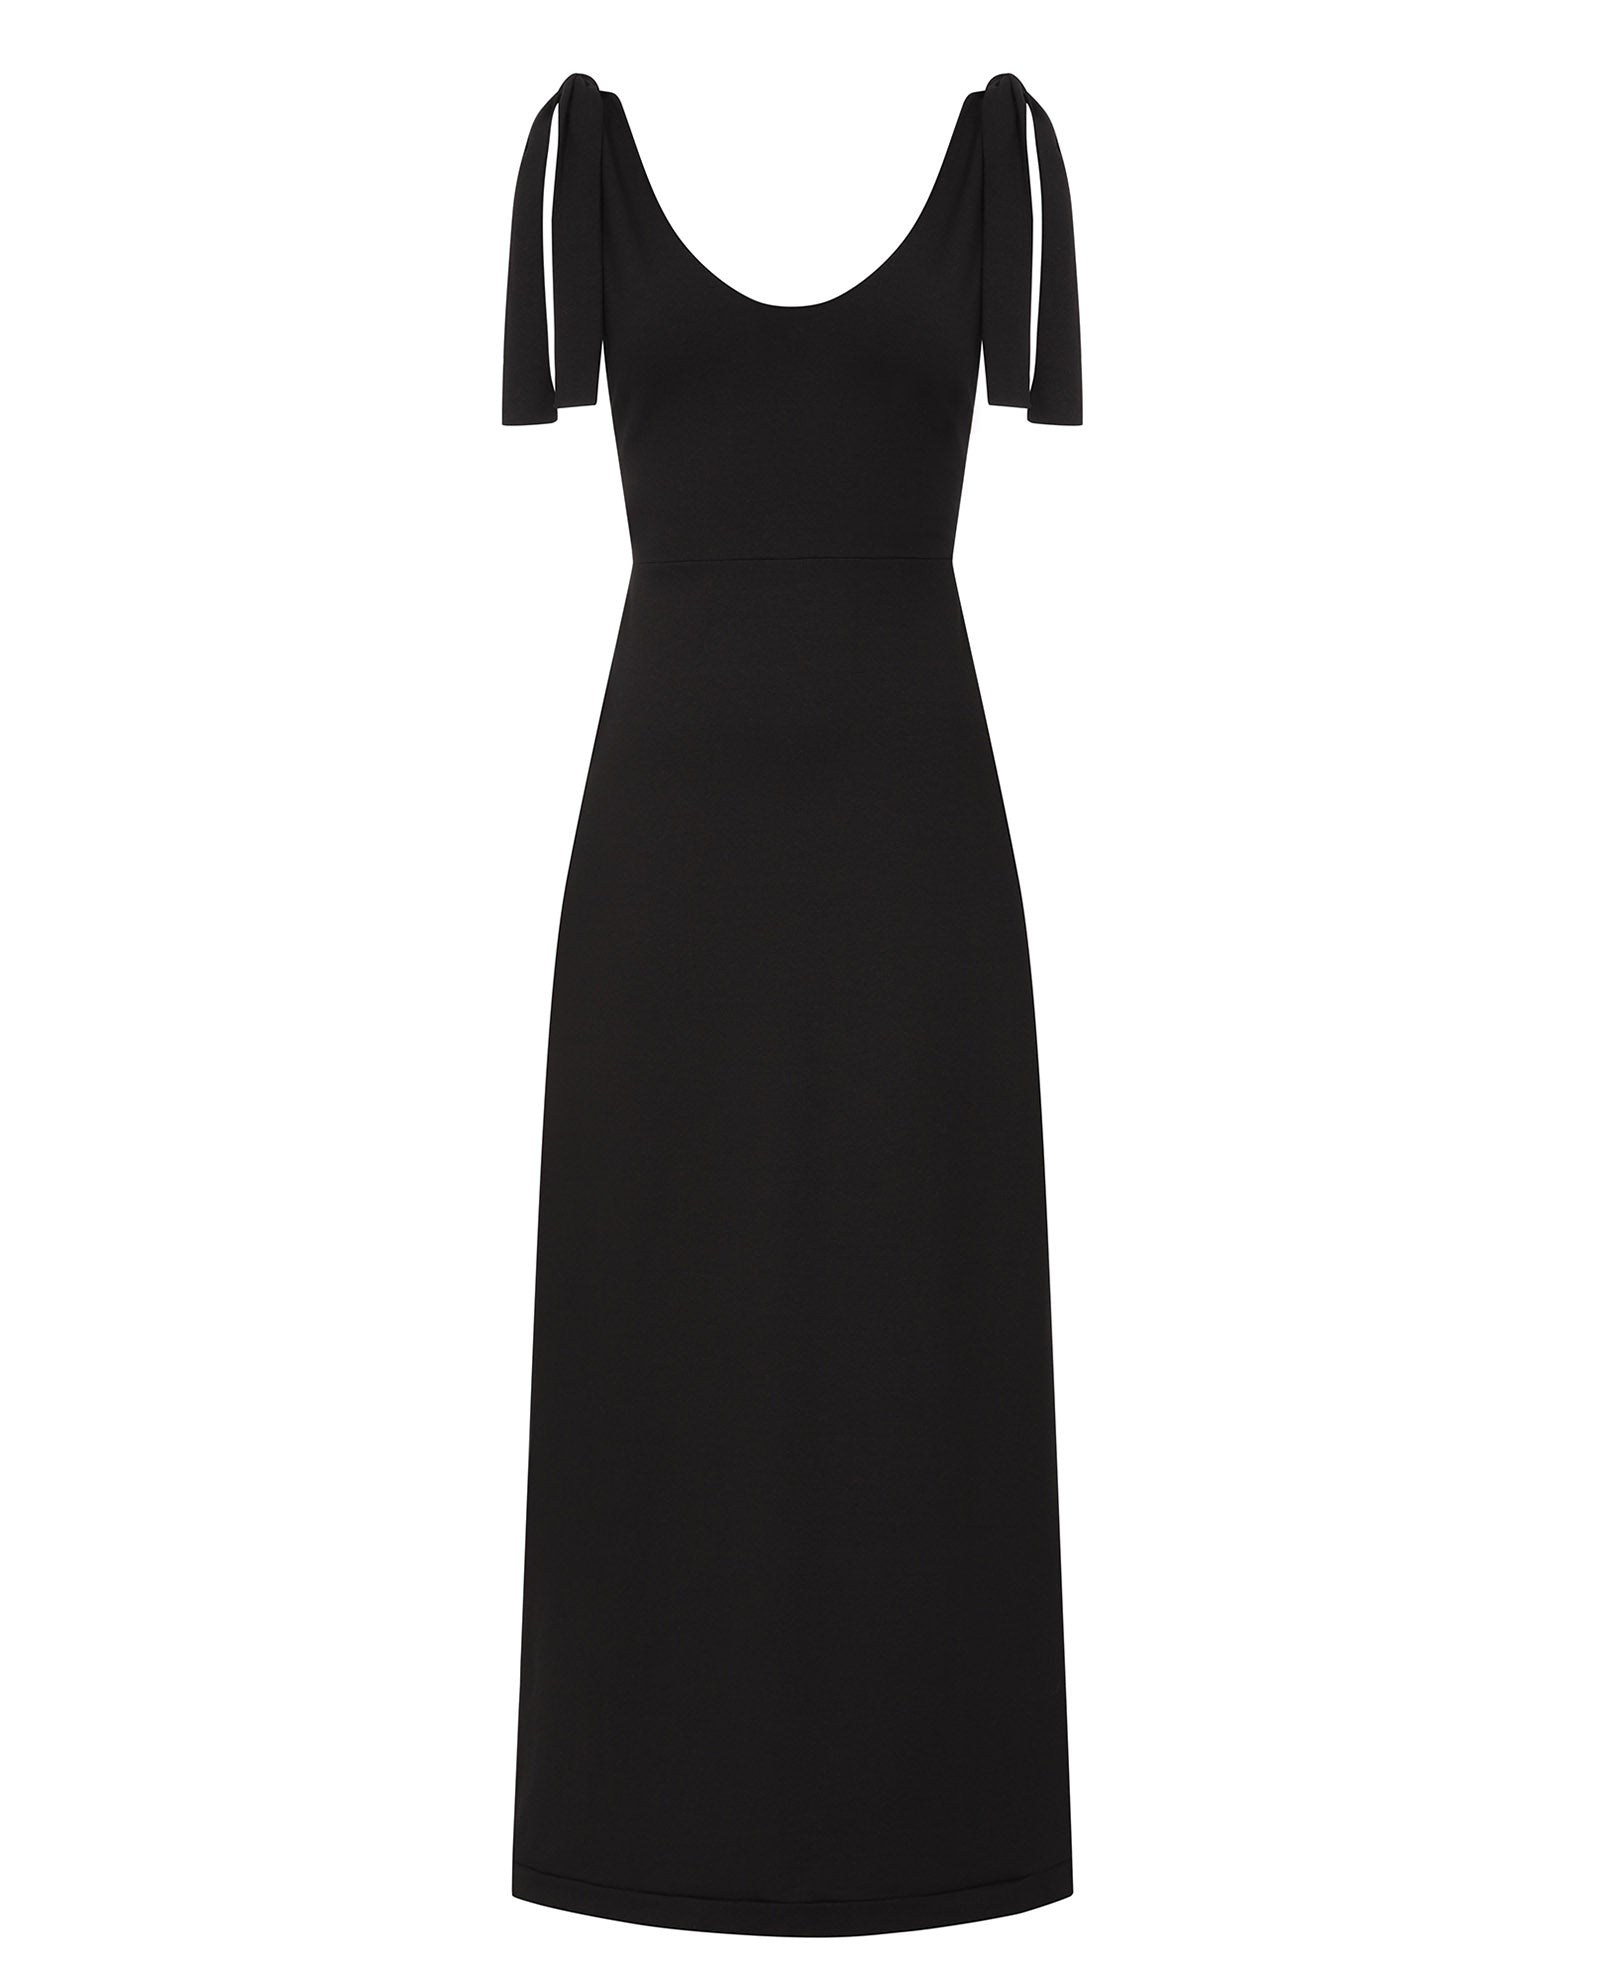 Women’s Black Lace Back Cotton Maxi Dress Large Sophie Cameron Davies